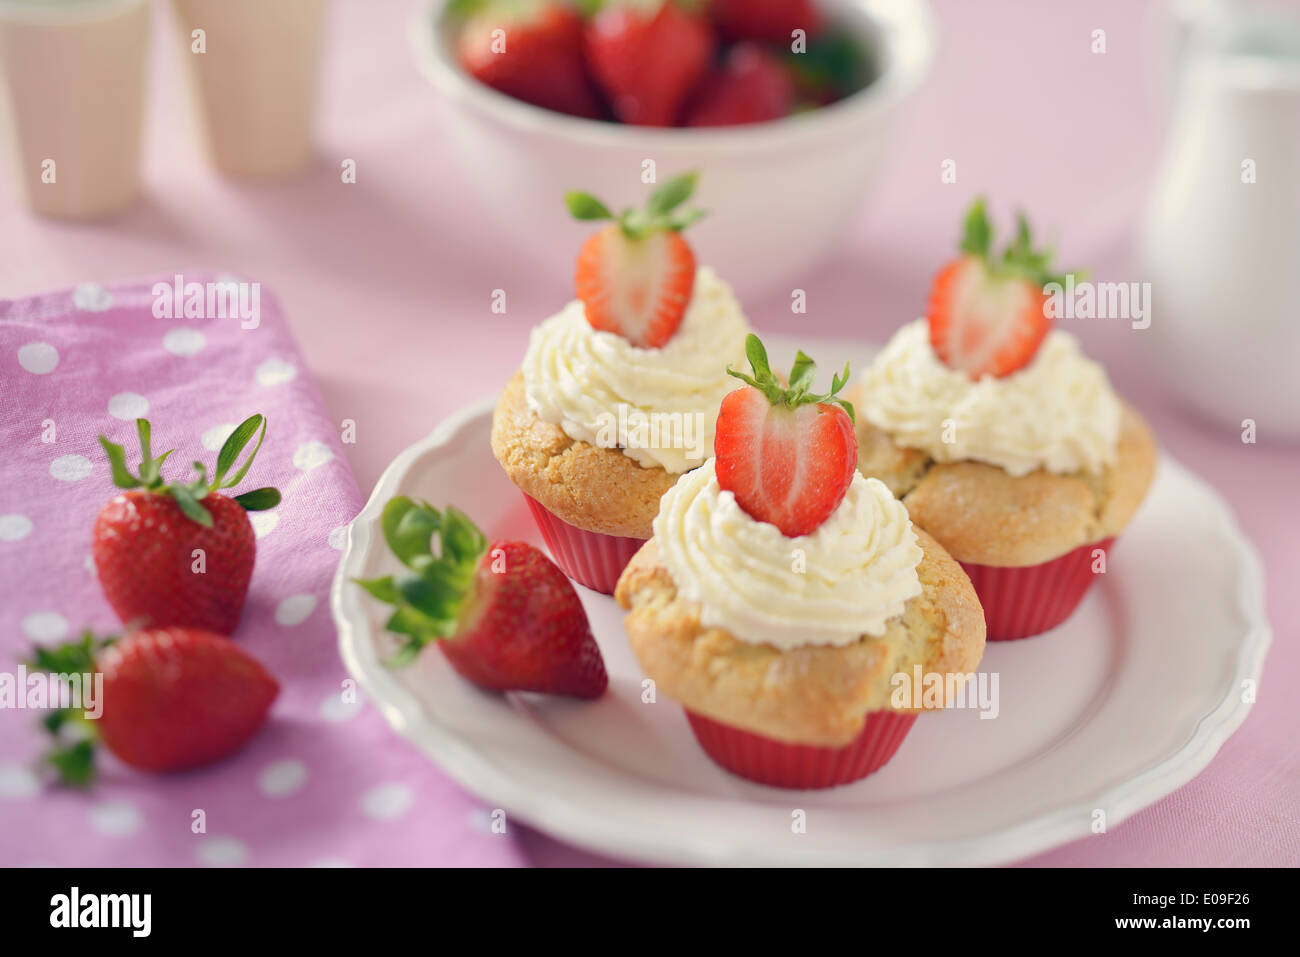 Erdbeer-Muffins mit Mascarpone-Topping auf Platte Stockfoto